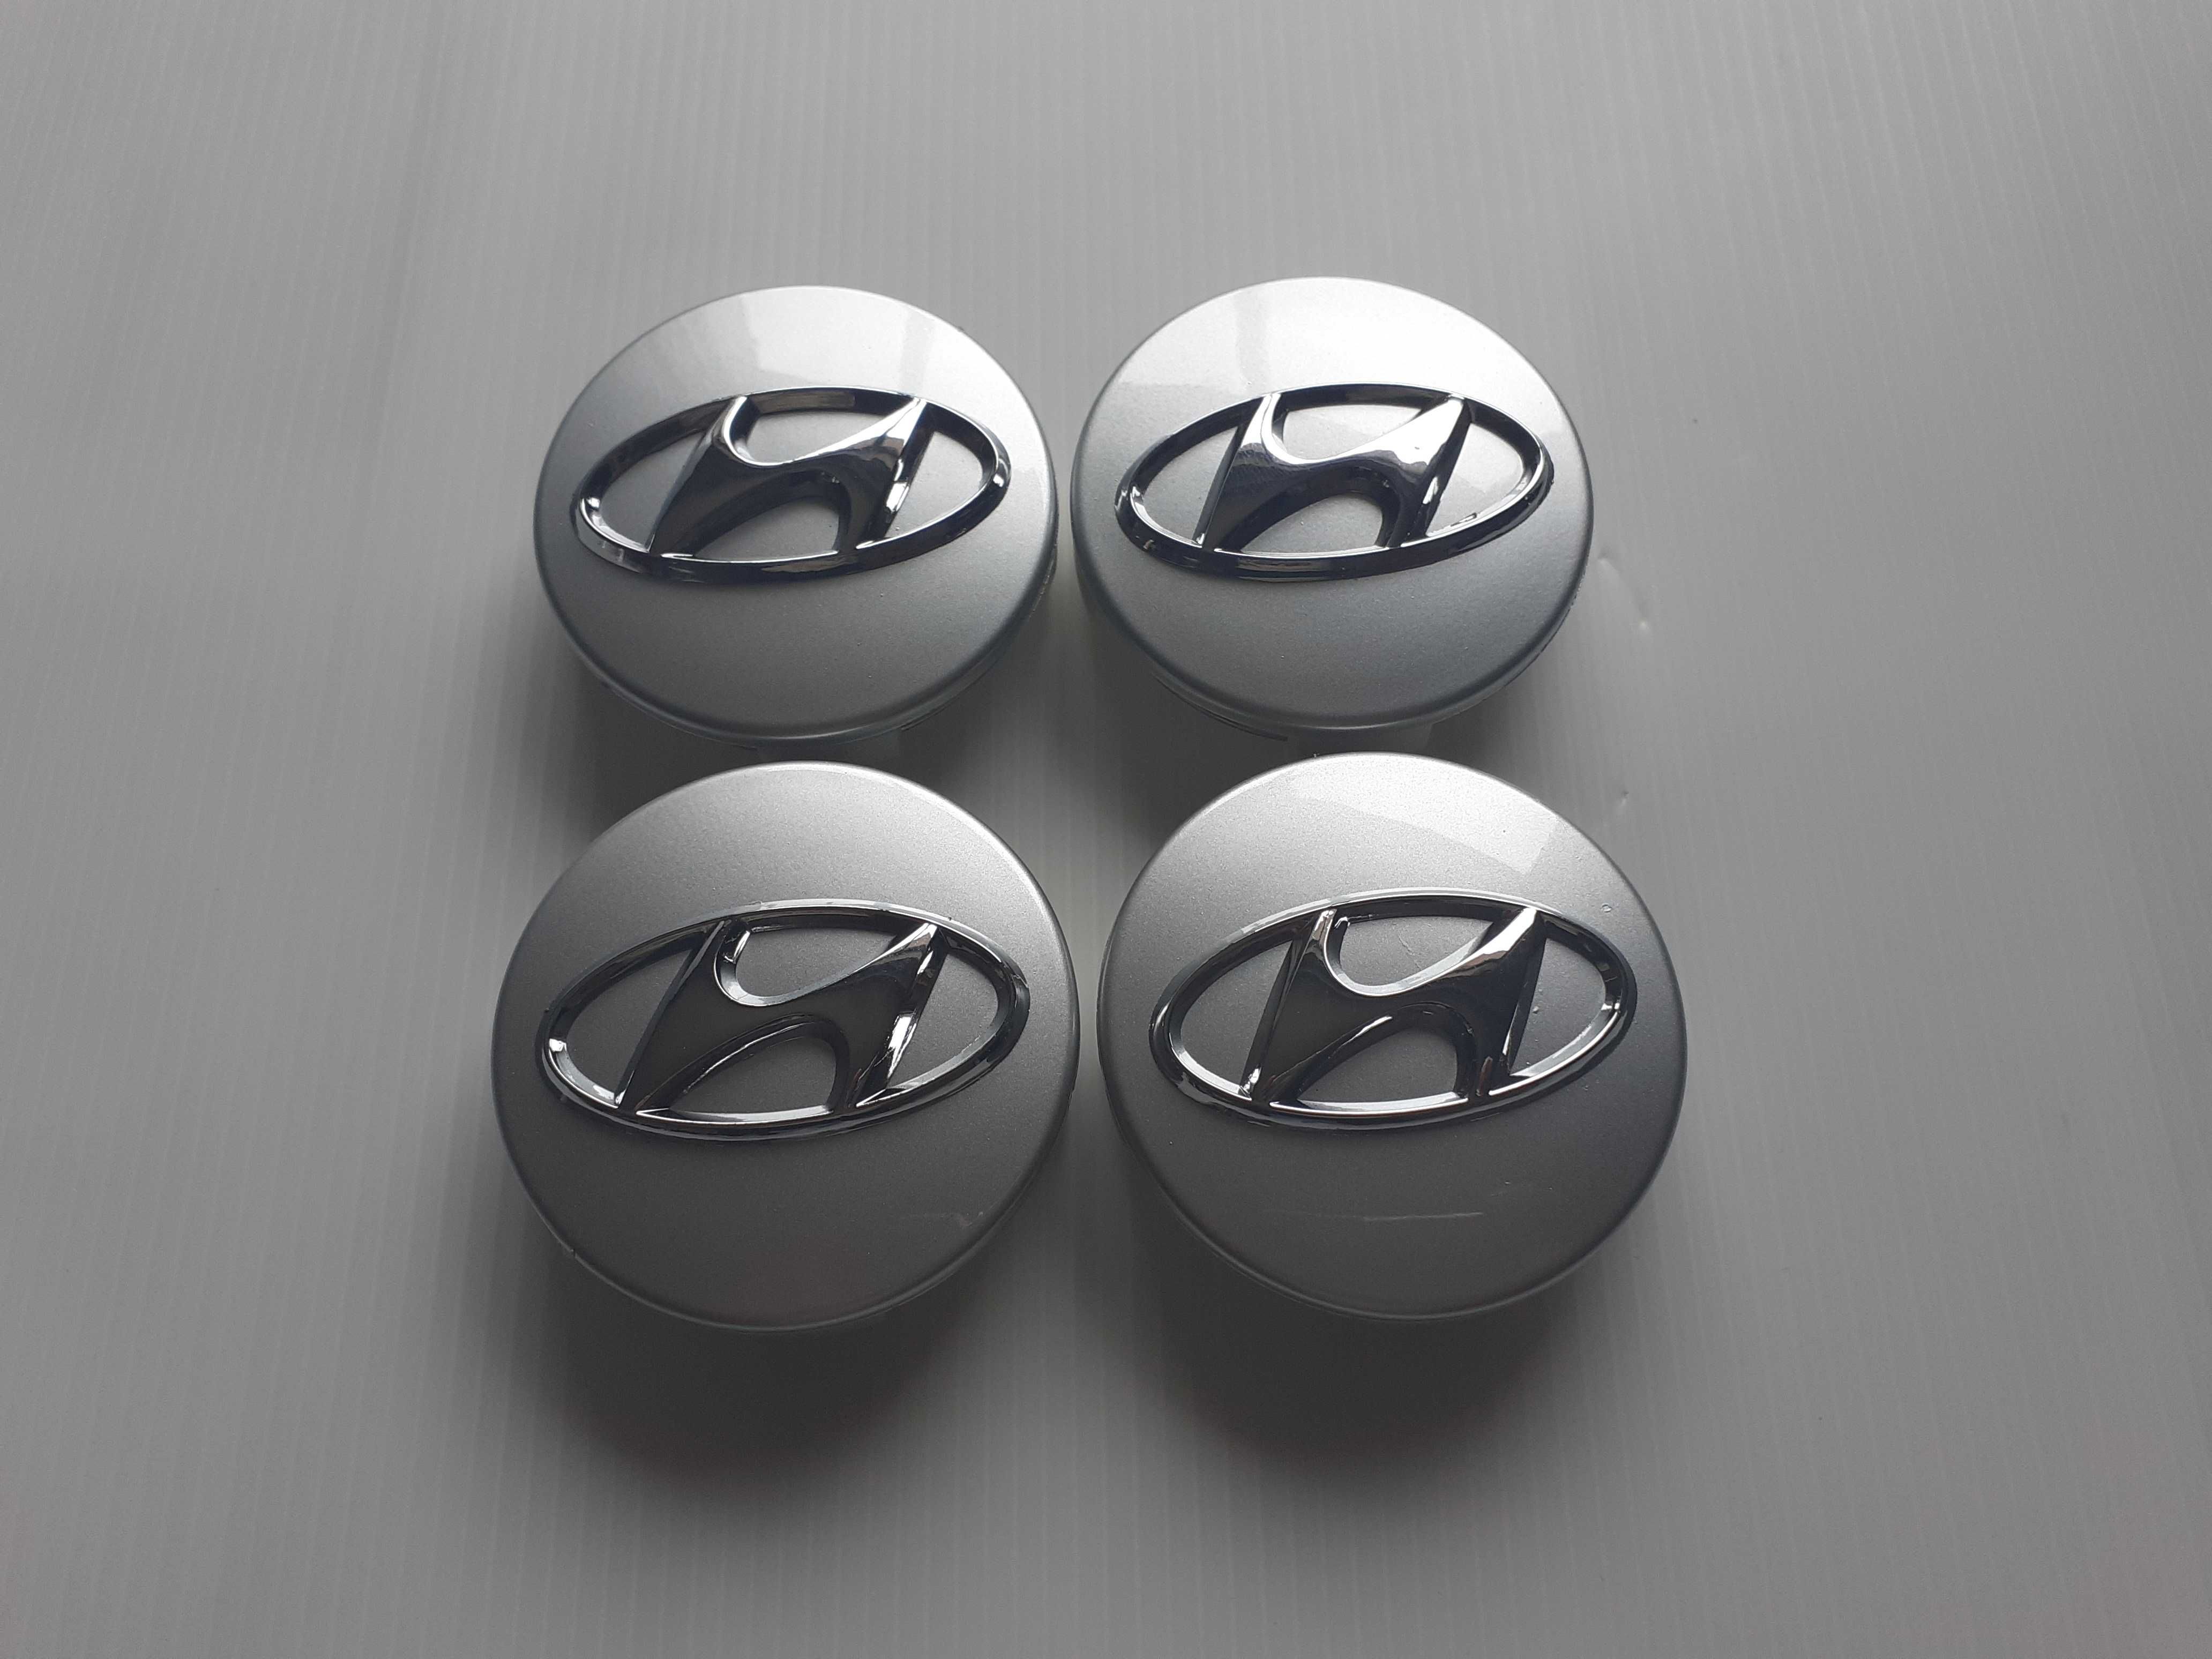 Centros/tampas de jante completos Hyundai com 56, 60, 65 e 68 mm